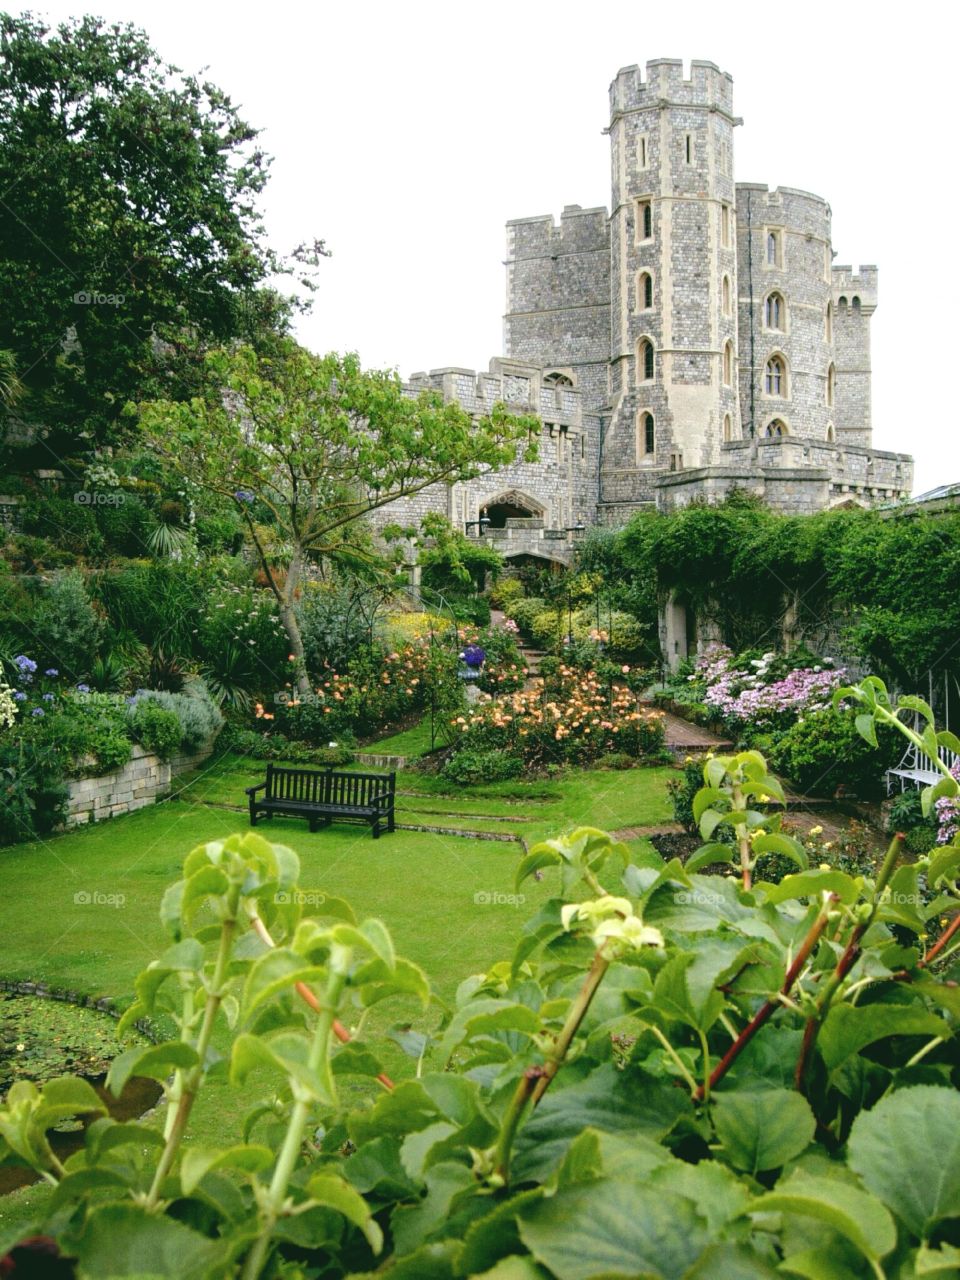 In the Garden of Eden. Castle grounds - Bath, England